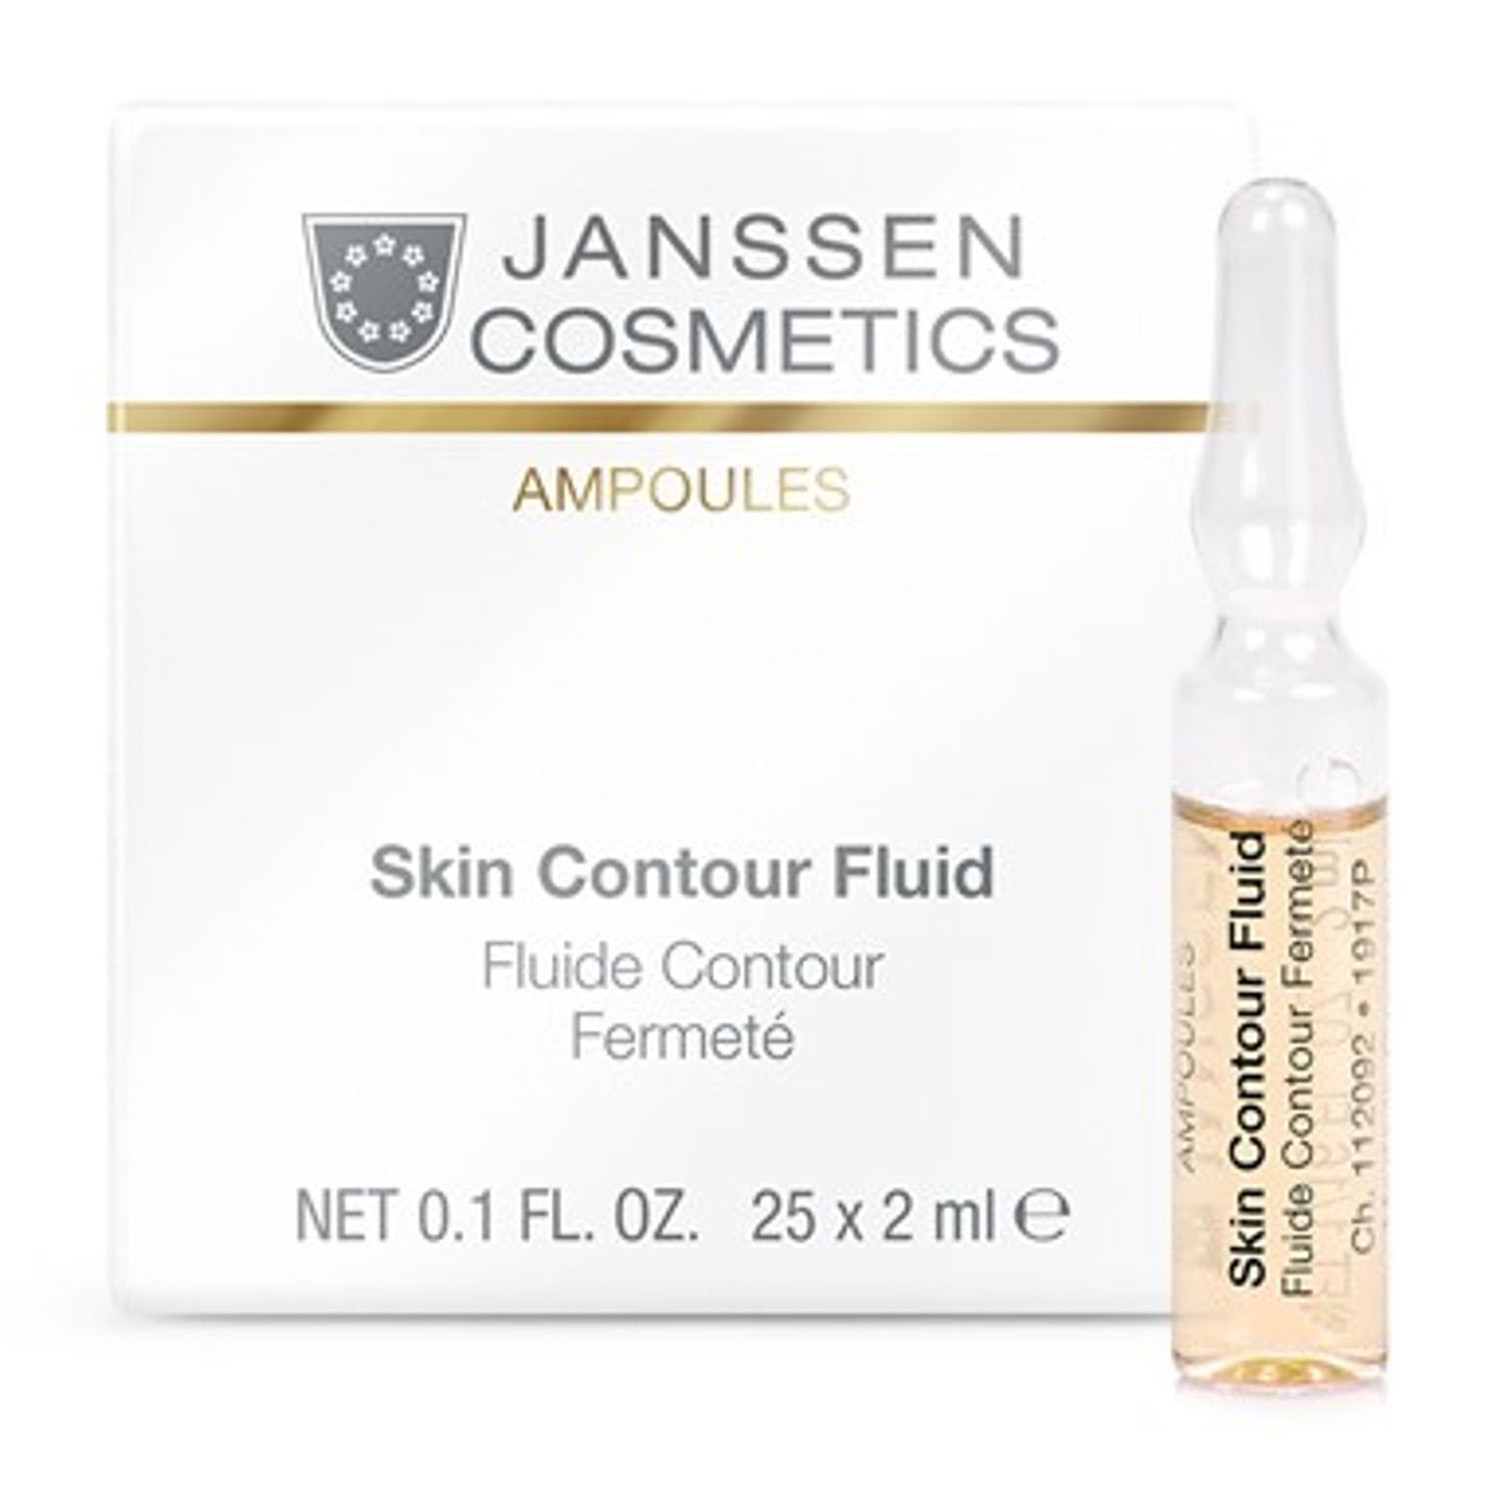 Омолаживающая лифтинг-сыворотка Janssen Cosmetics Skin Contour Fluid